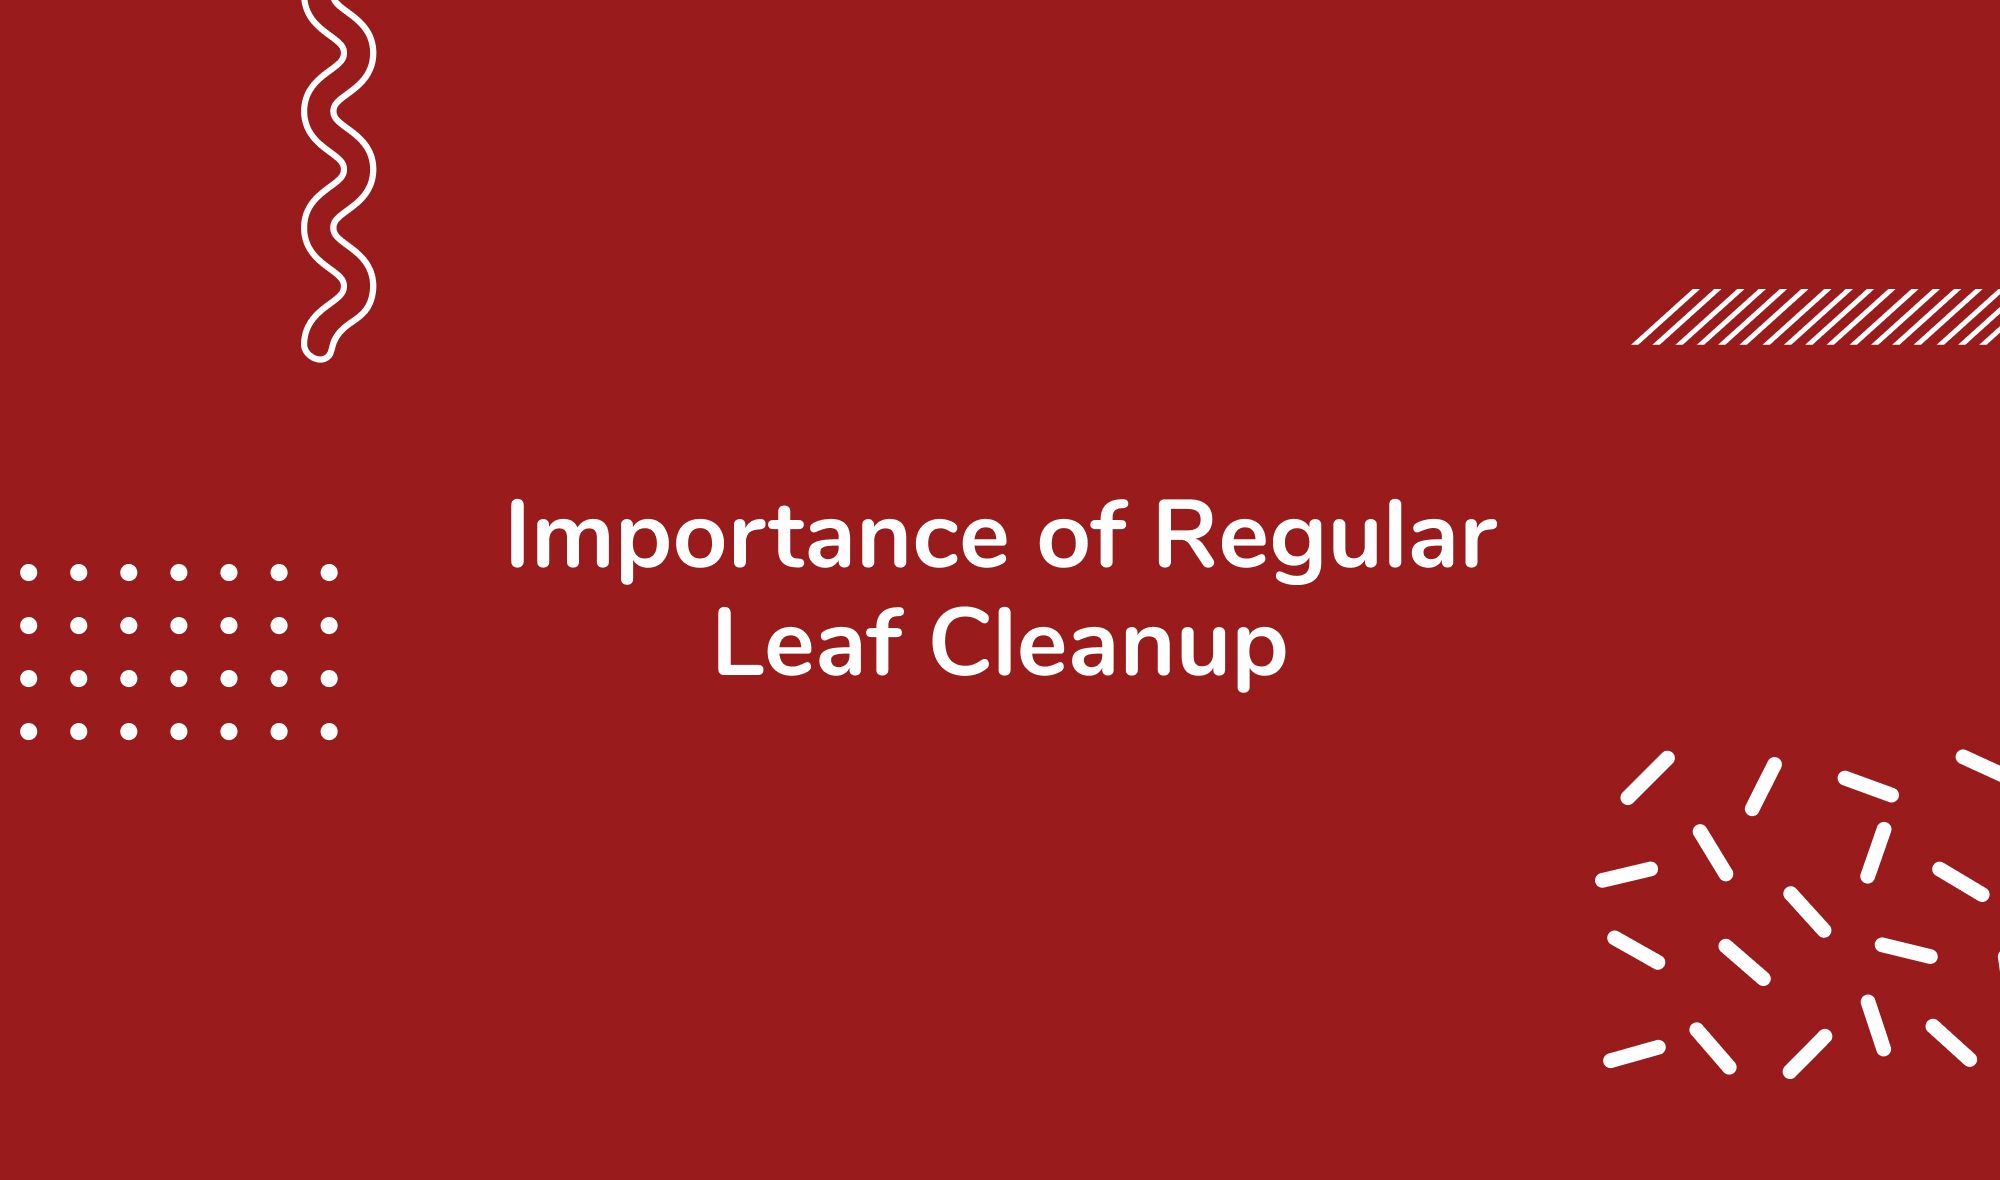 Importance of Regular Leaf Cleanup